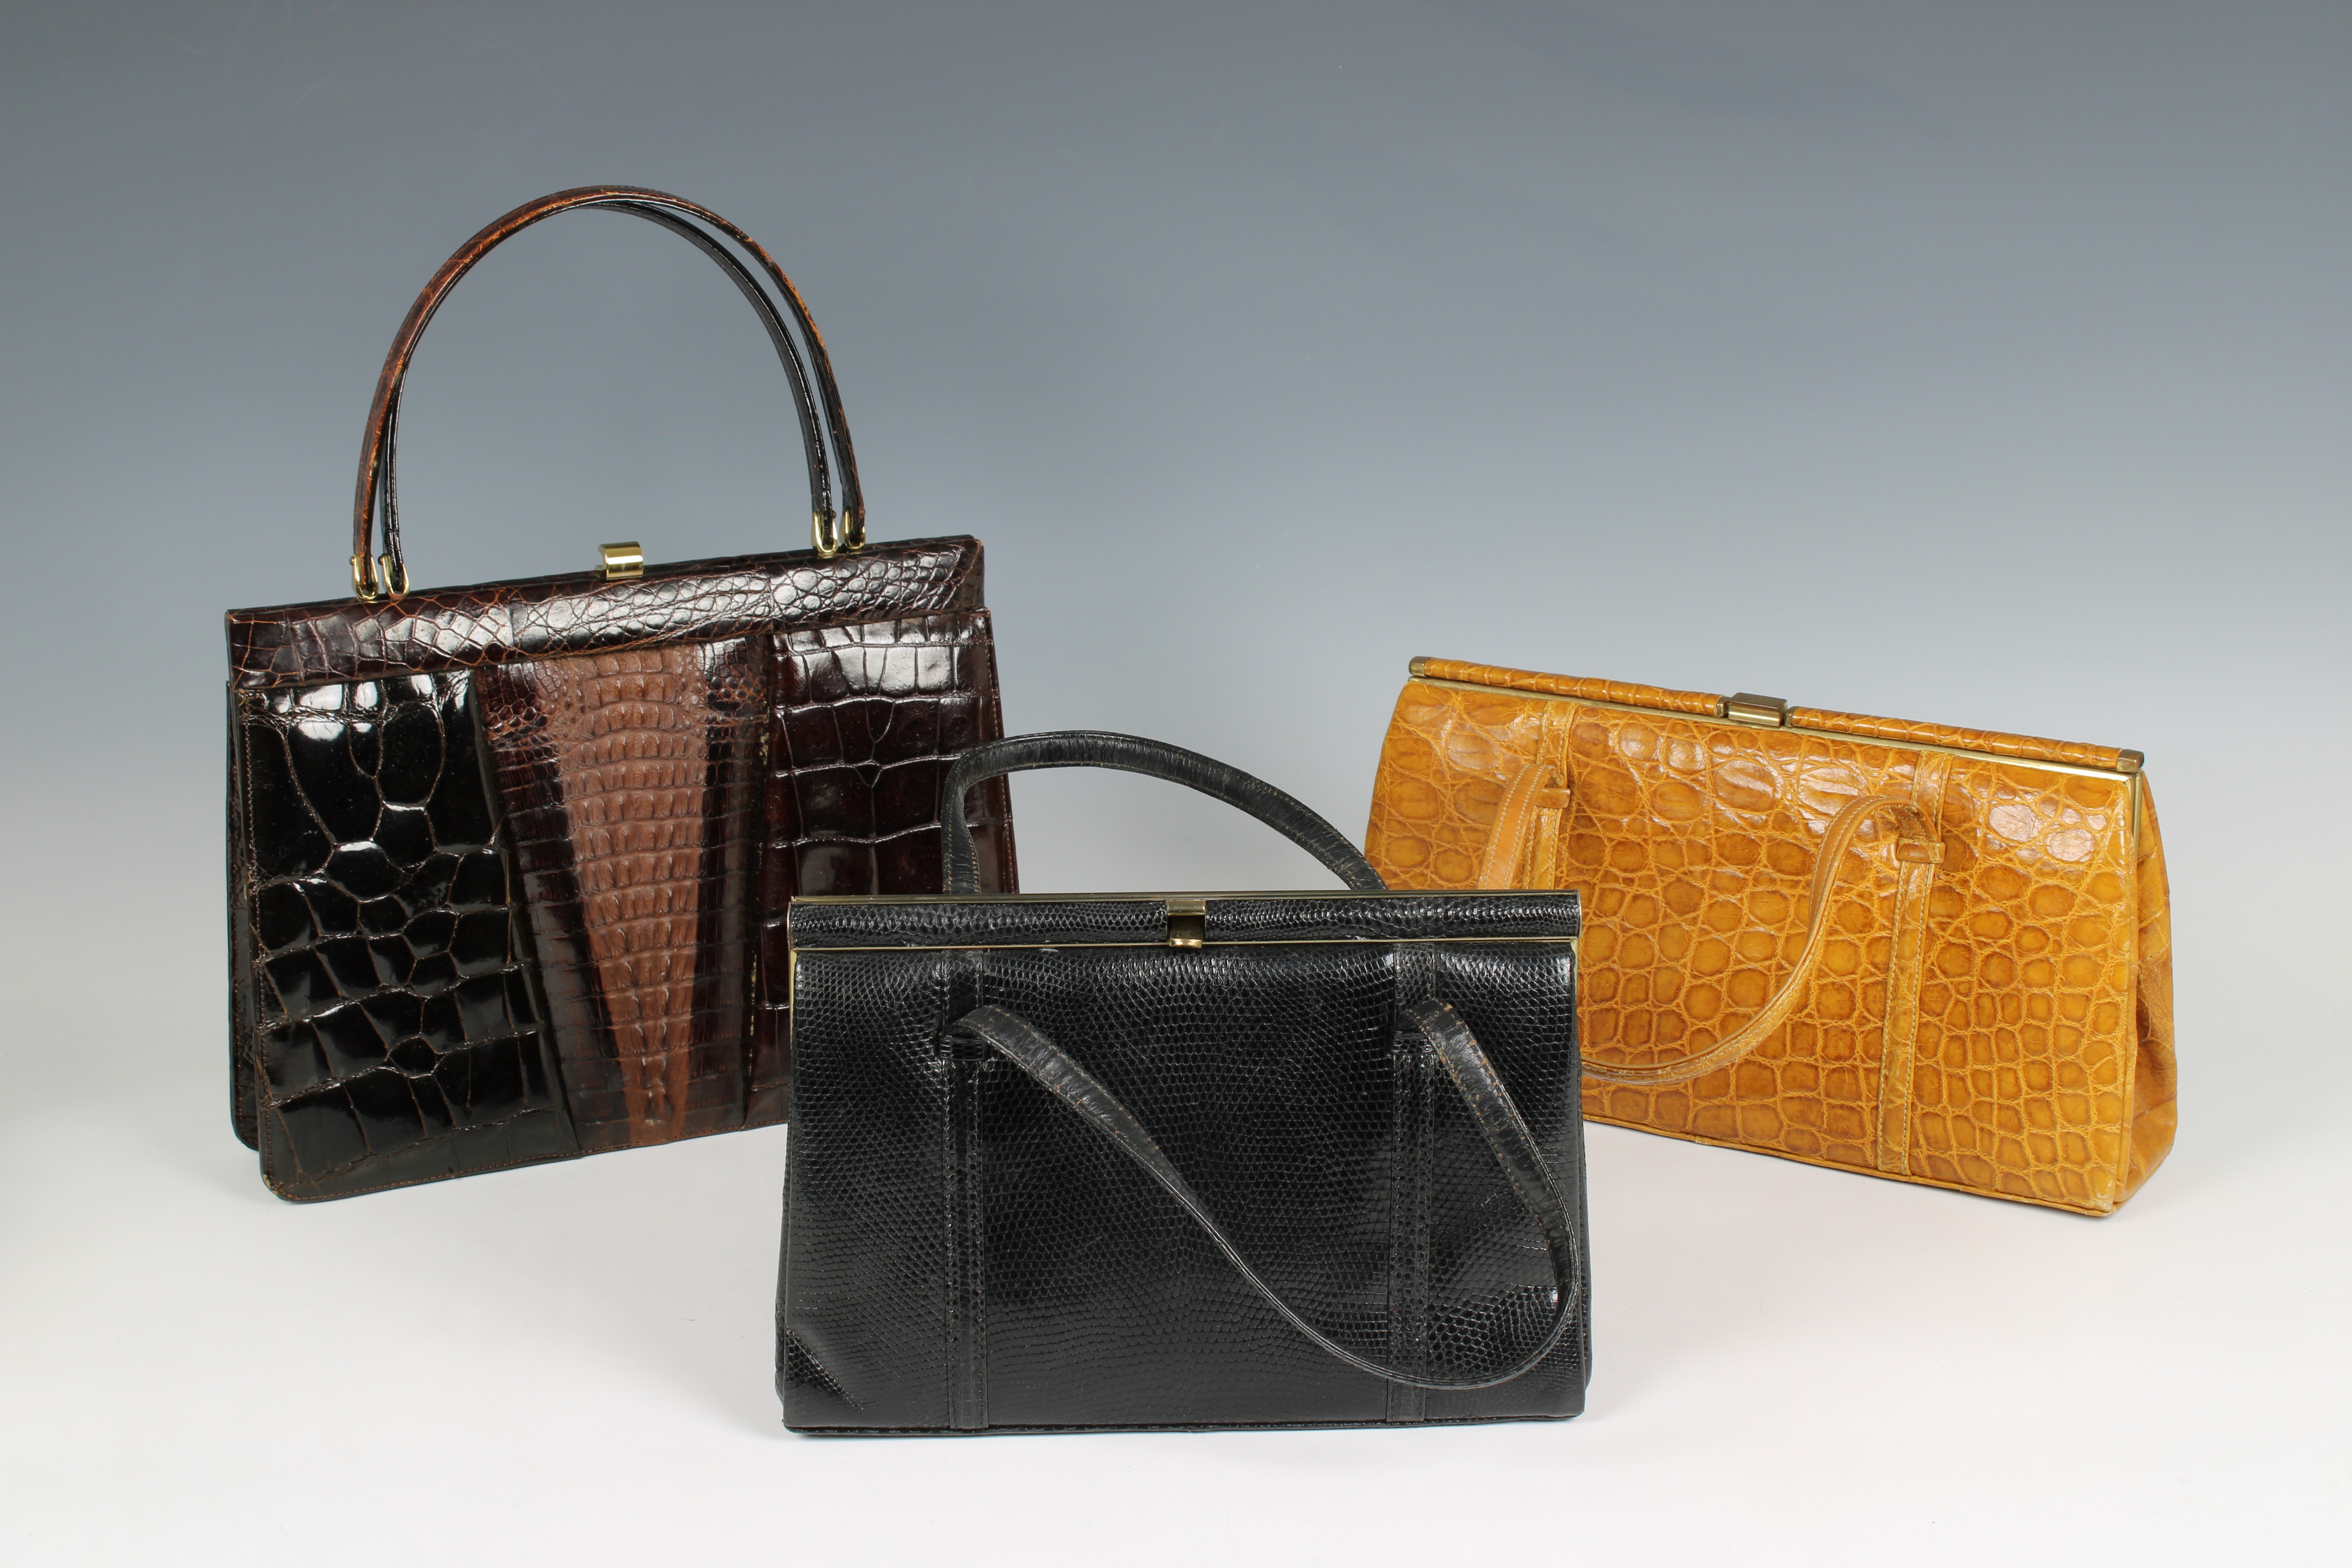 Two crocodile skin vintage handbags by Fassbender